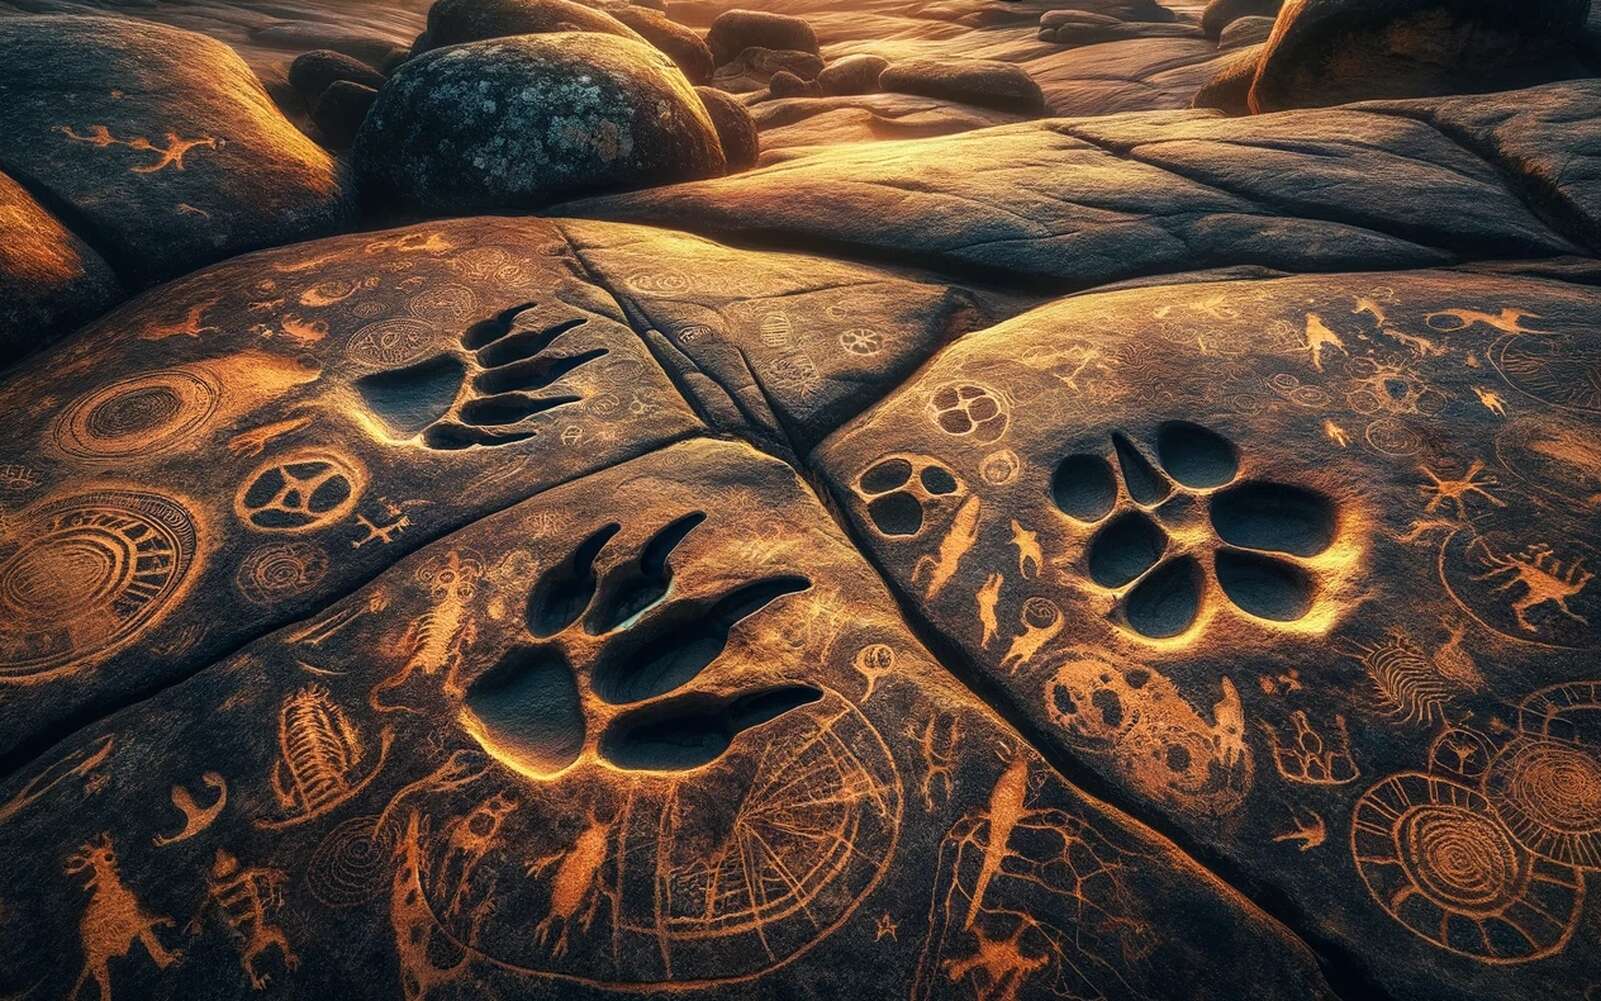 Découverte unique au monde de gravures préhistoriques avec des empreintes de dinosaures !